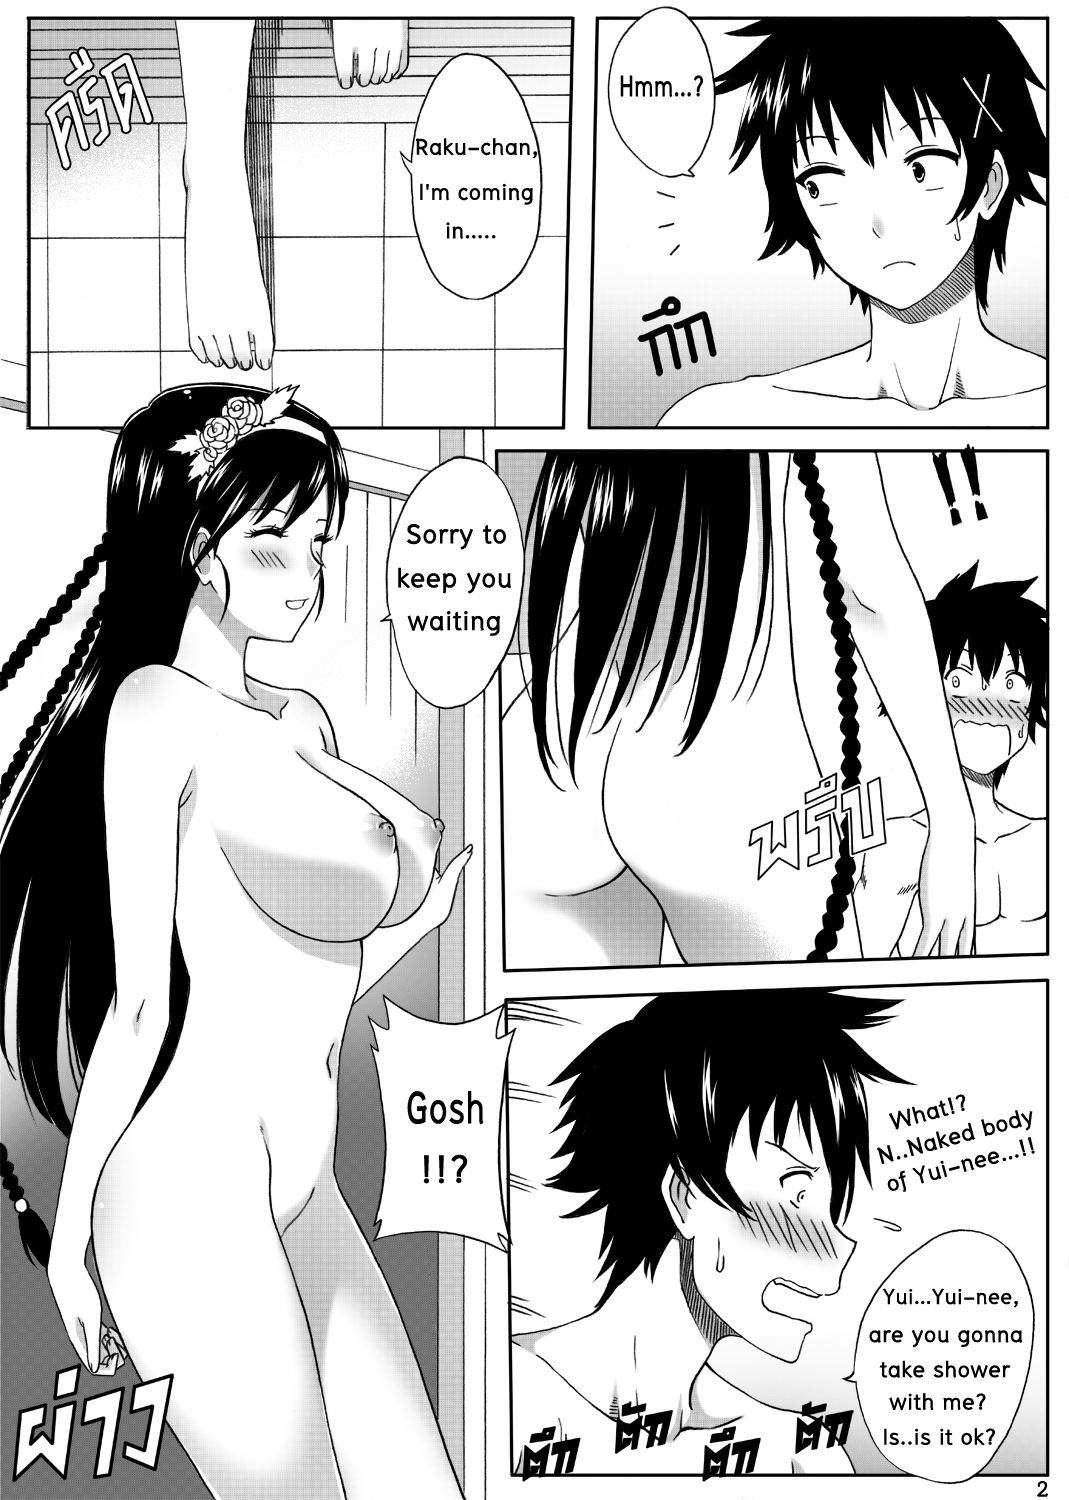 Read Nisekoi 128 5 Nisekoi [english] Hentai Online Porn Manga And Doujinshi